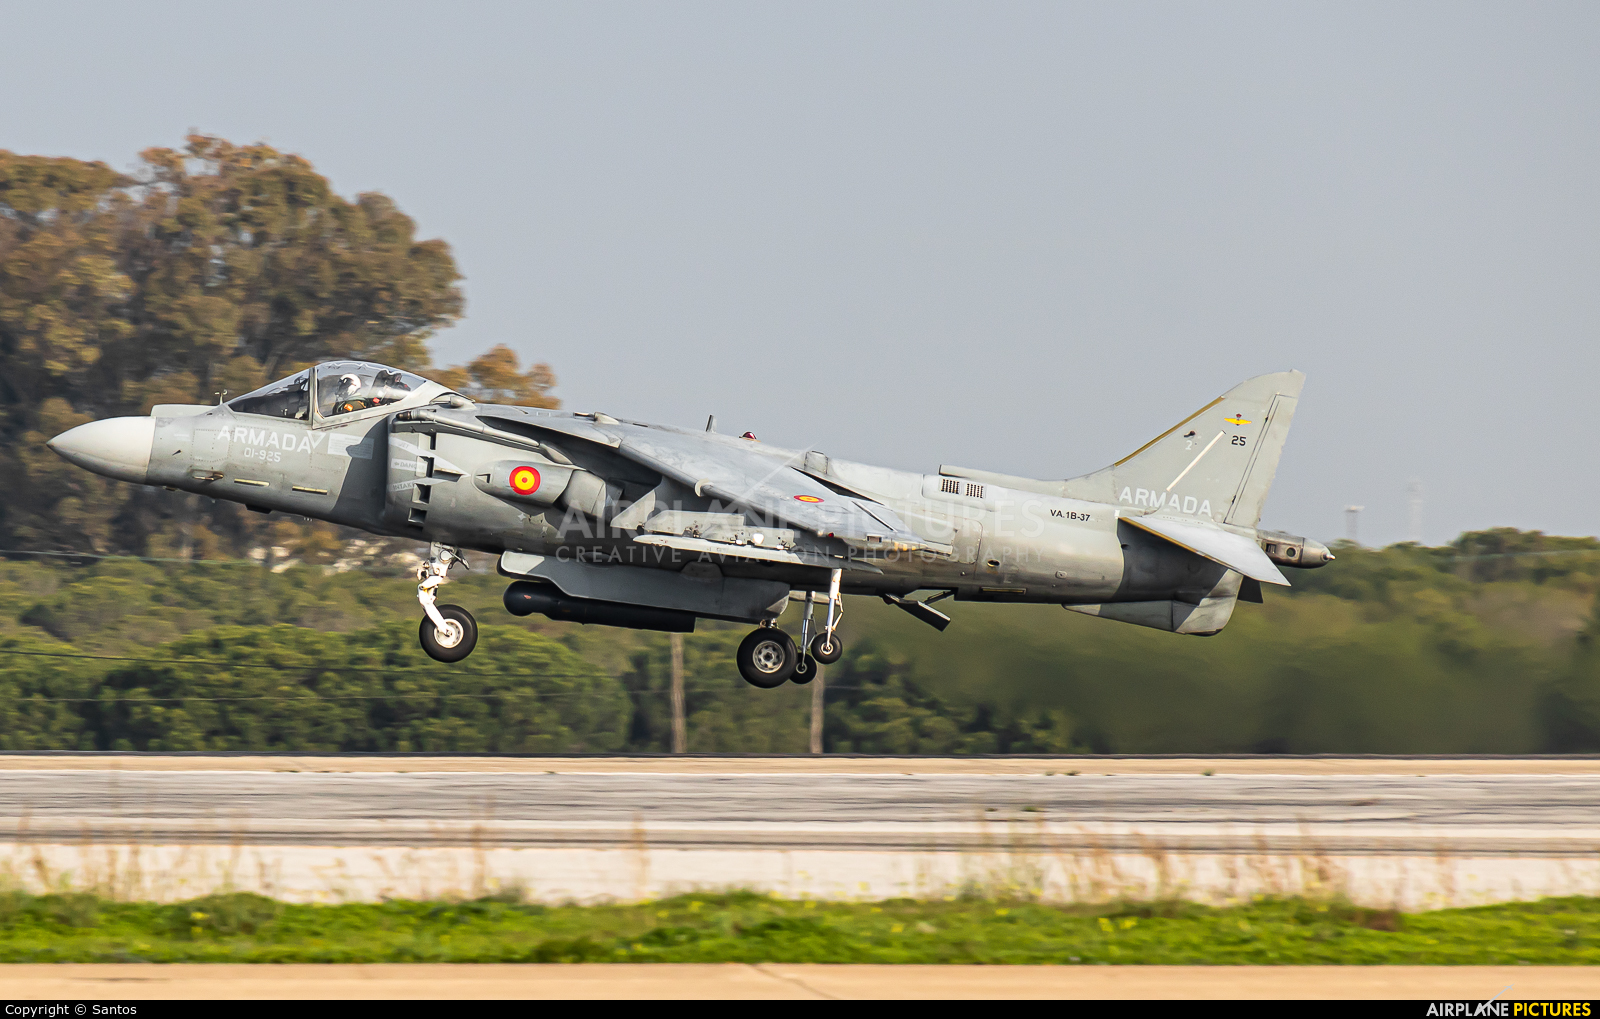 Spain - Navy VA.1B-37 aircraft at Rota